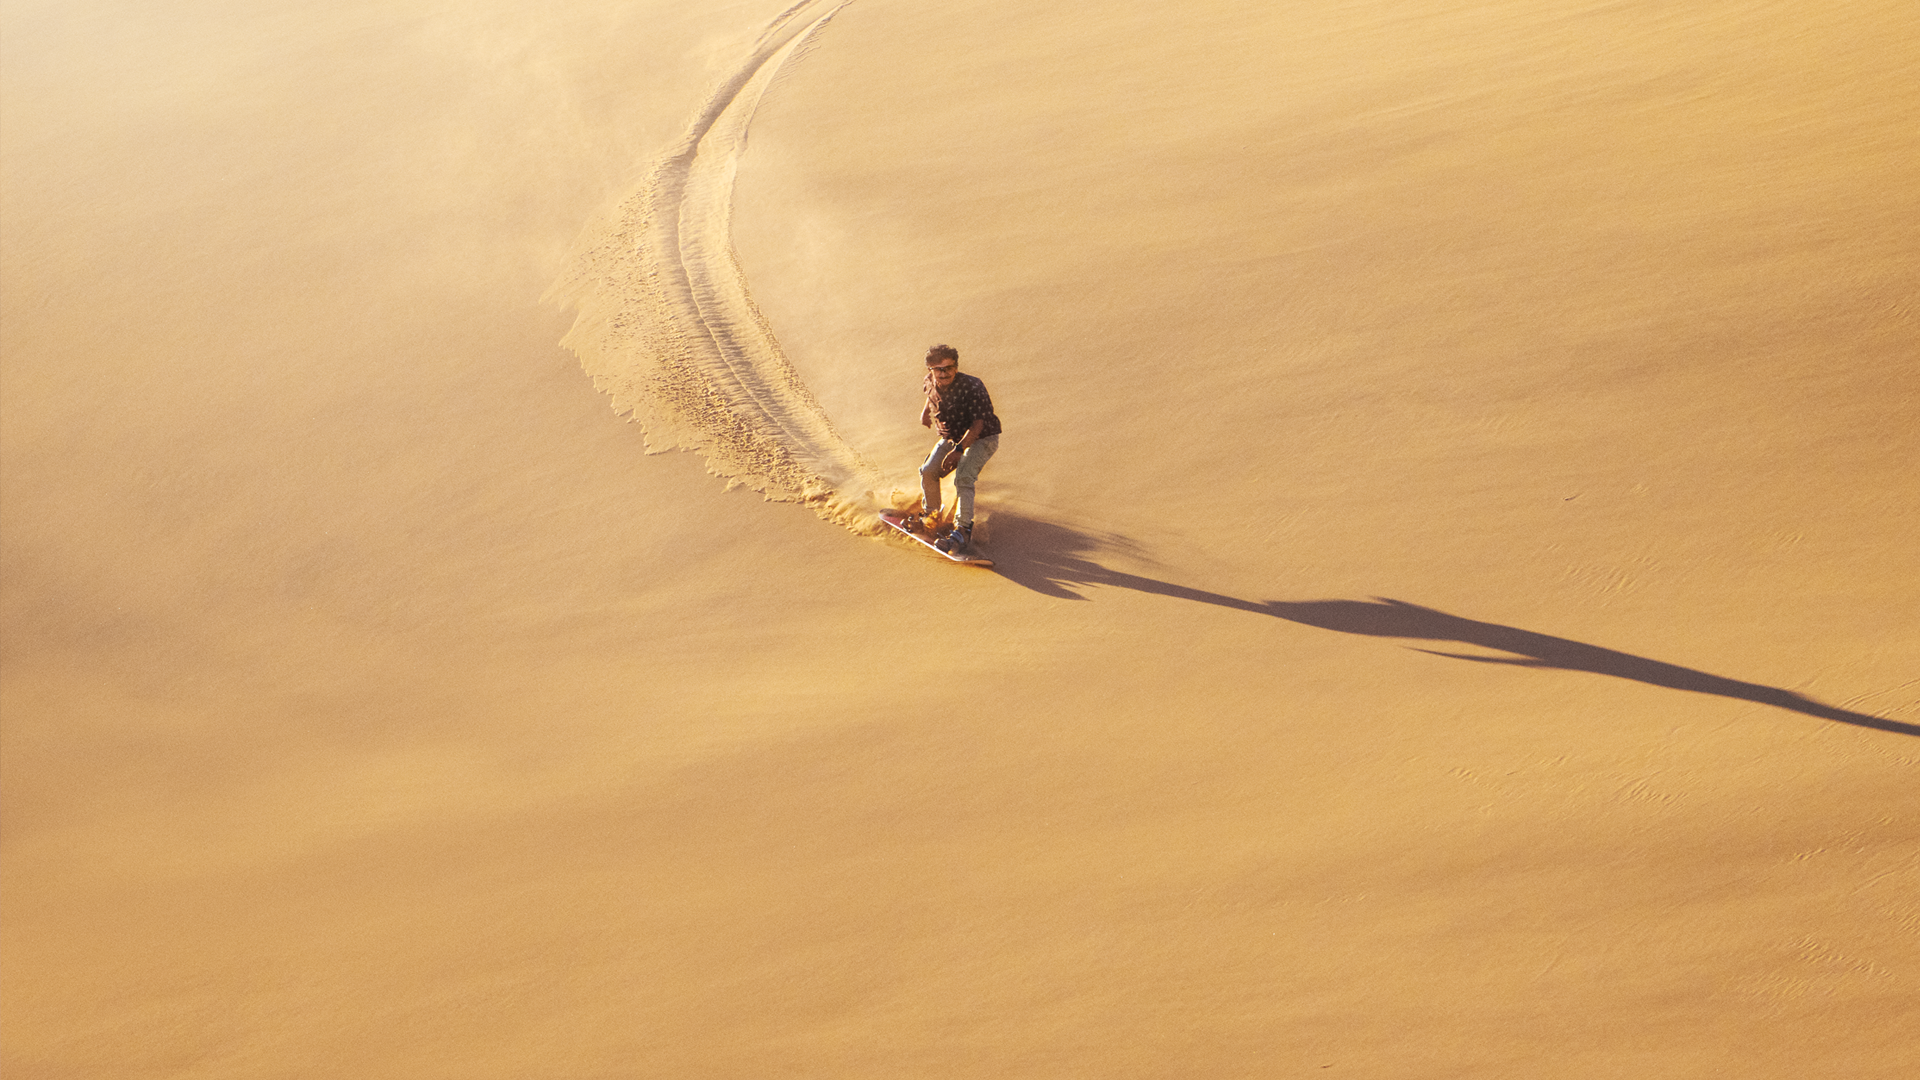 Karim surfar på sanddynorna i öknen.